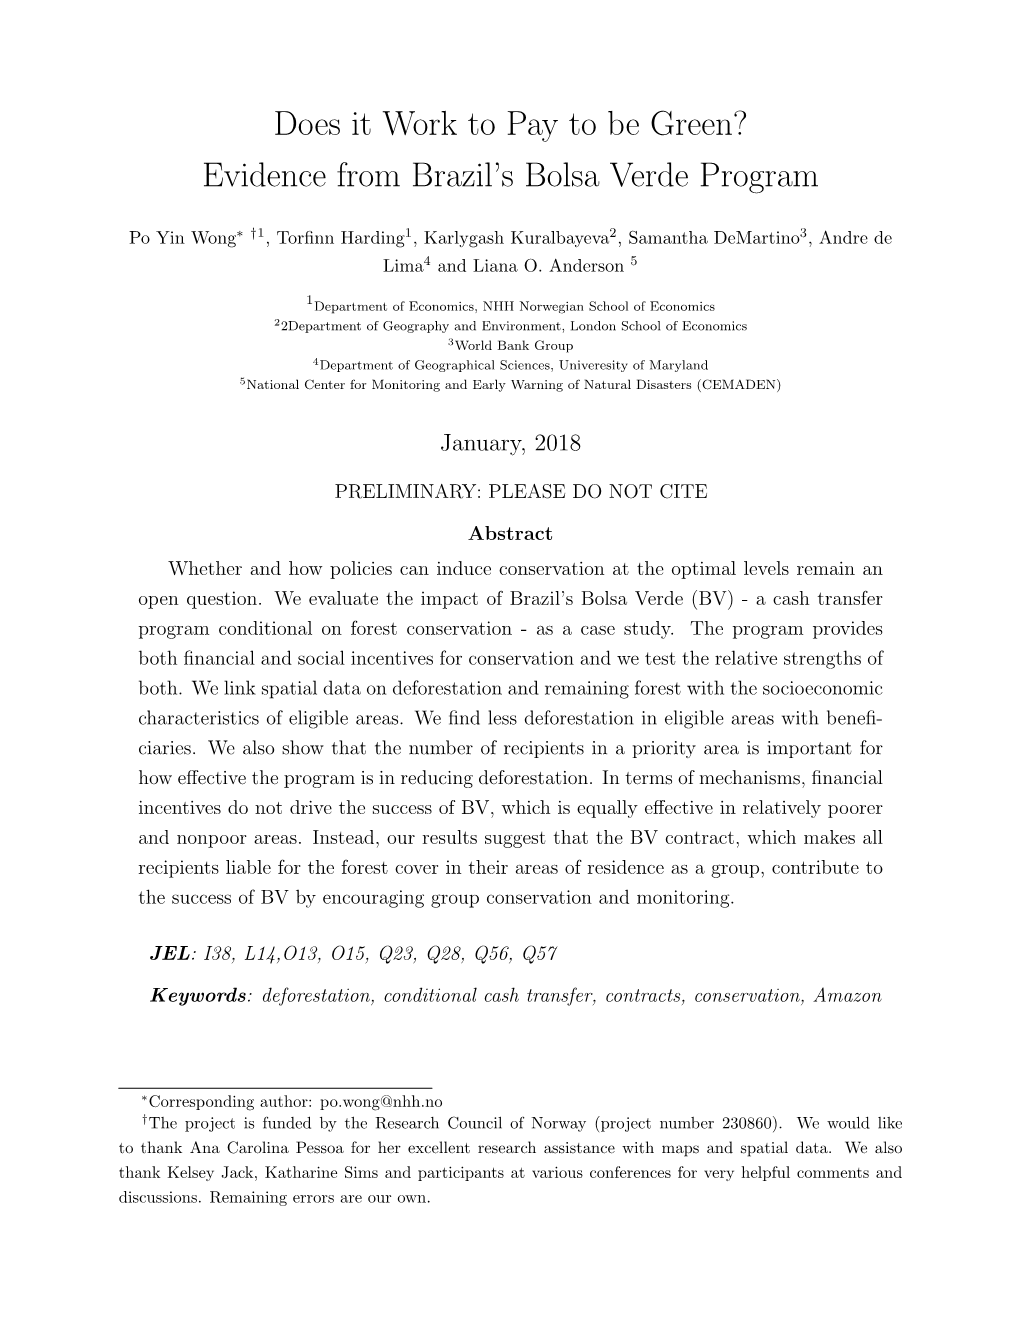 Evidence from Brazil's Bolsa Verde Program